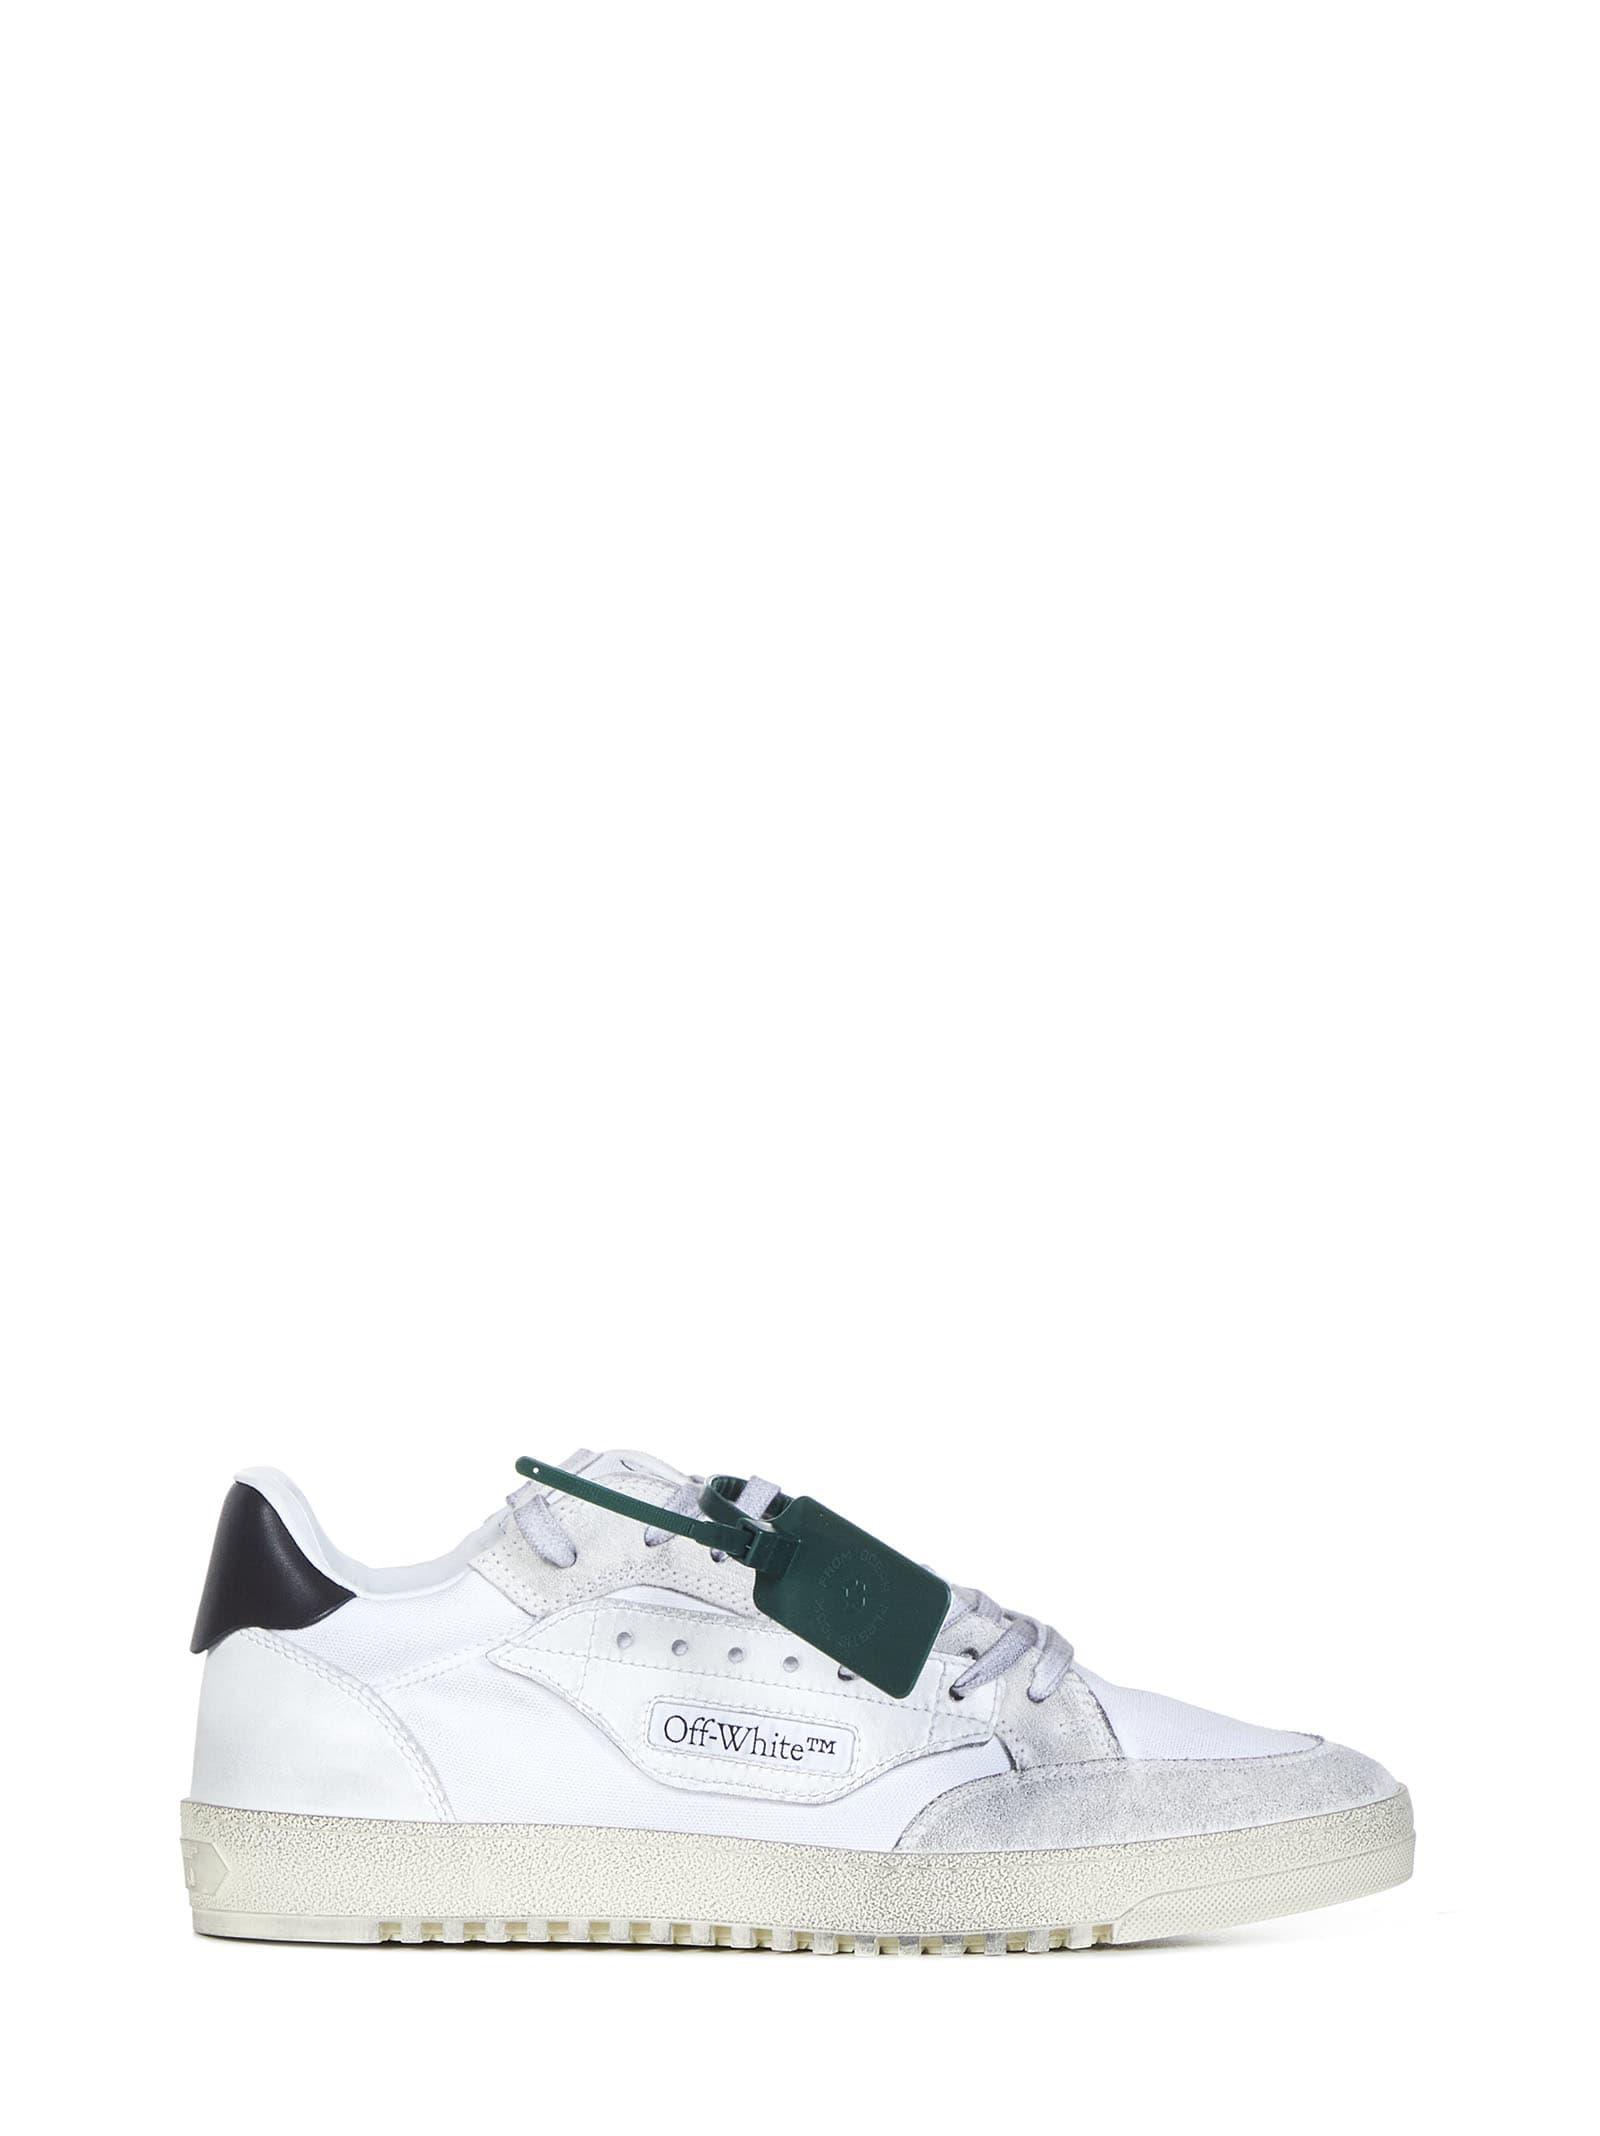 Off-White c/o Virgil Abloh 5.0 Sneakers in White for Men | Lyst